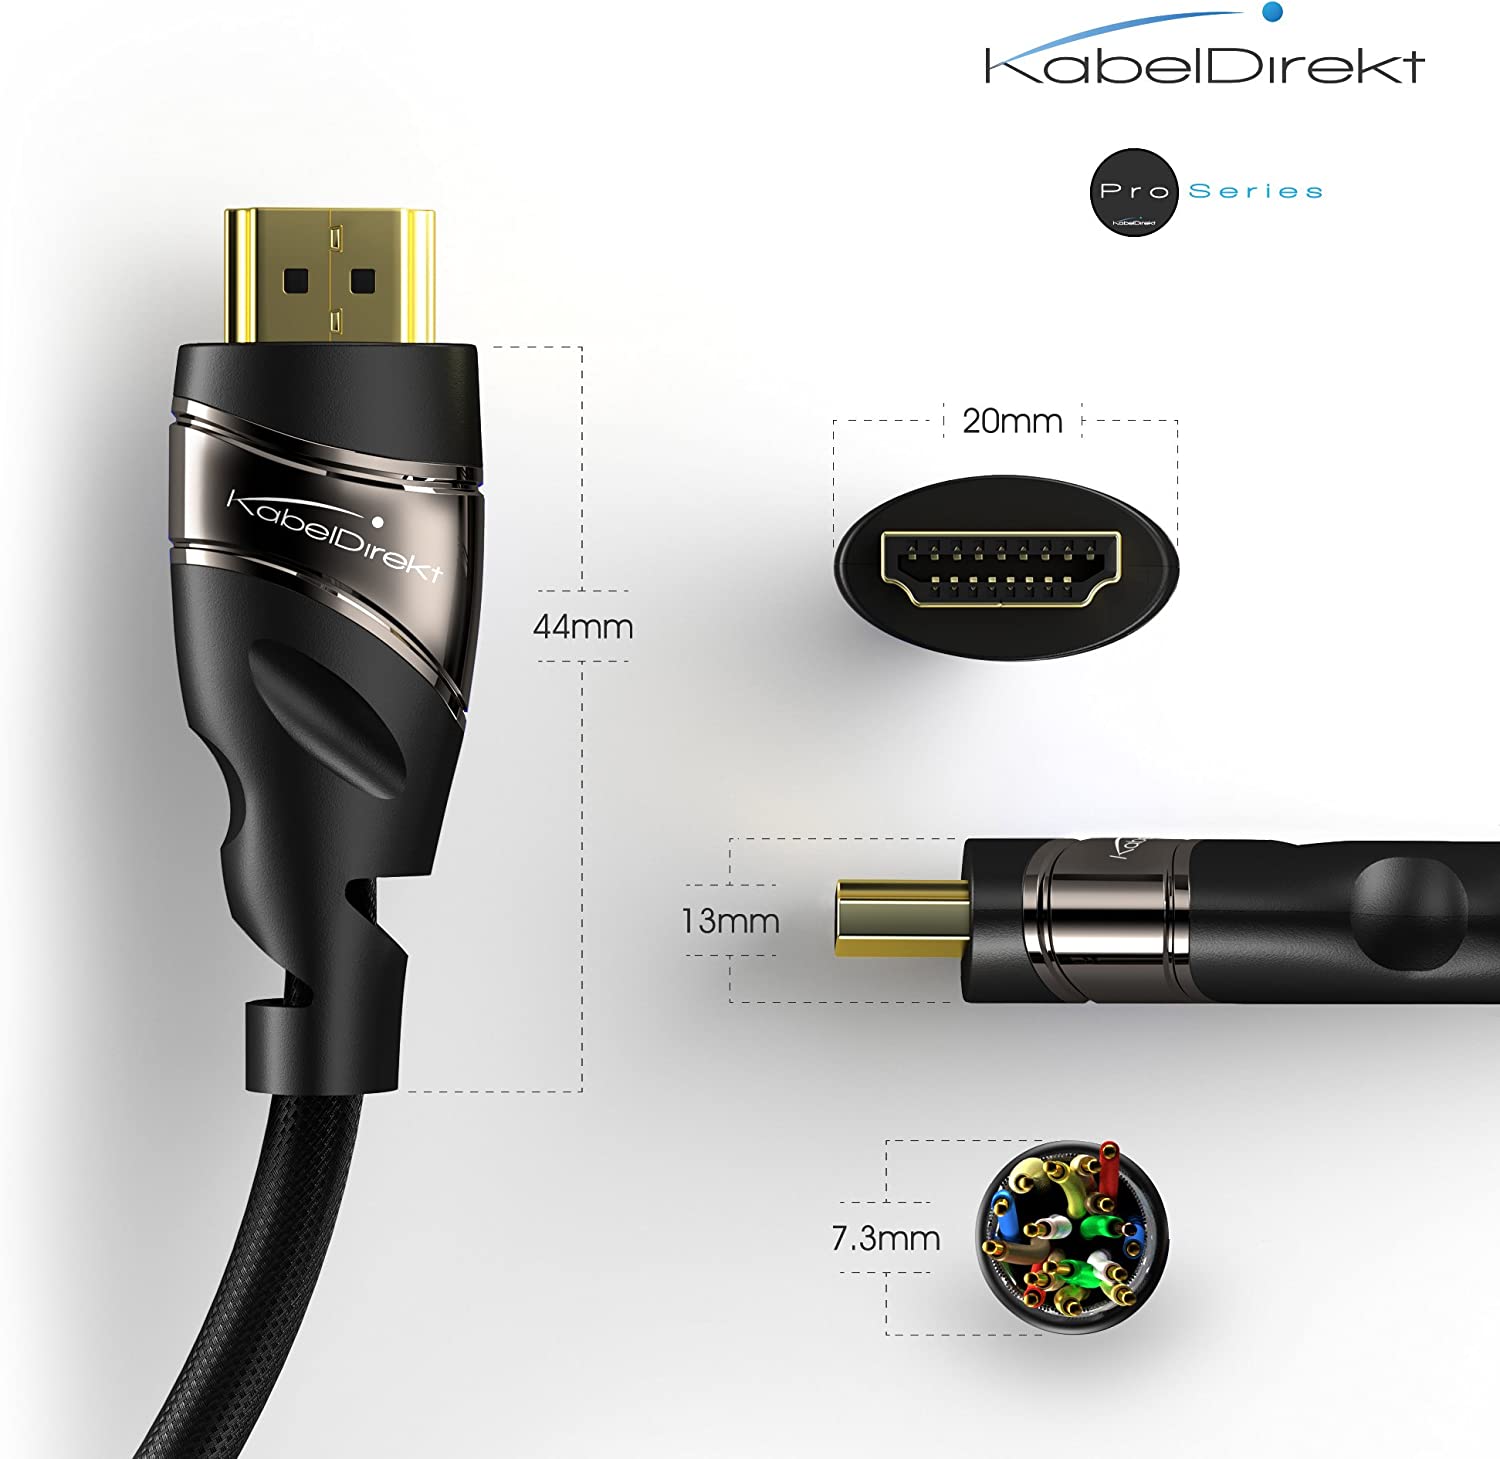 KabelDirekt Pro Series HDMI-kabel